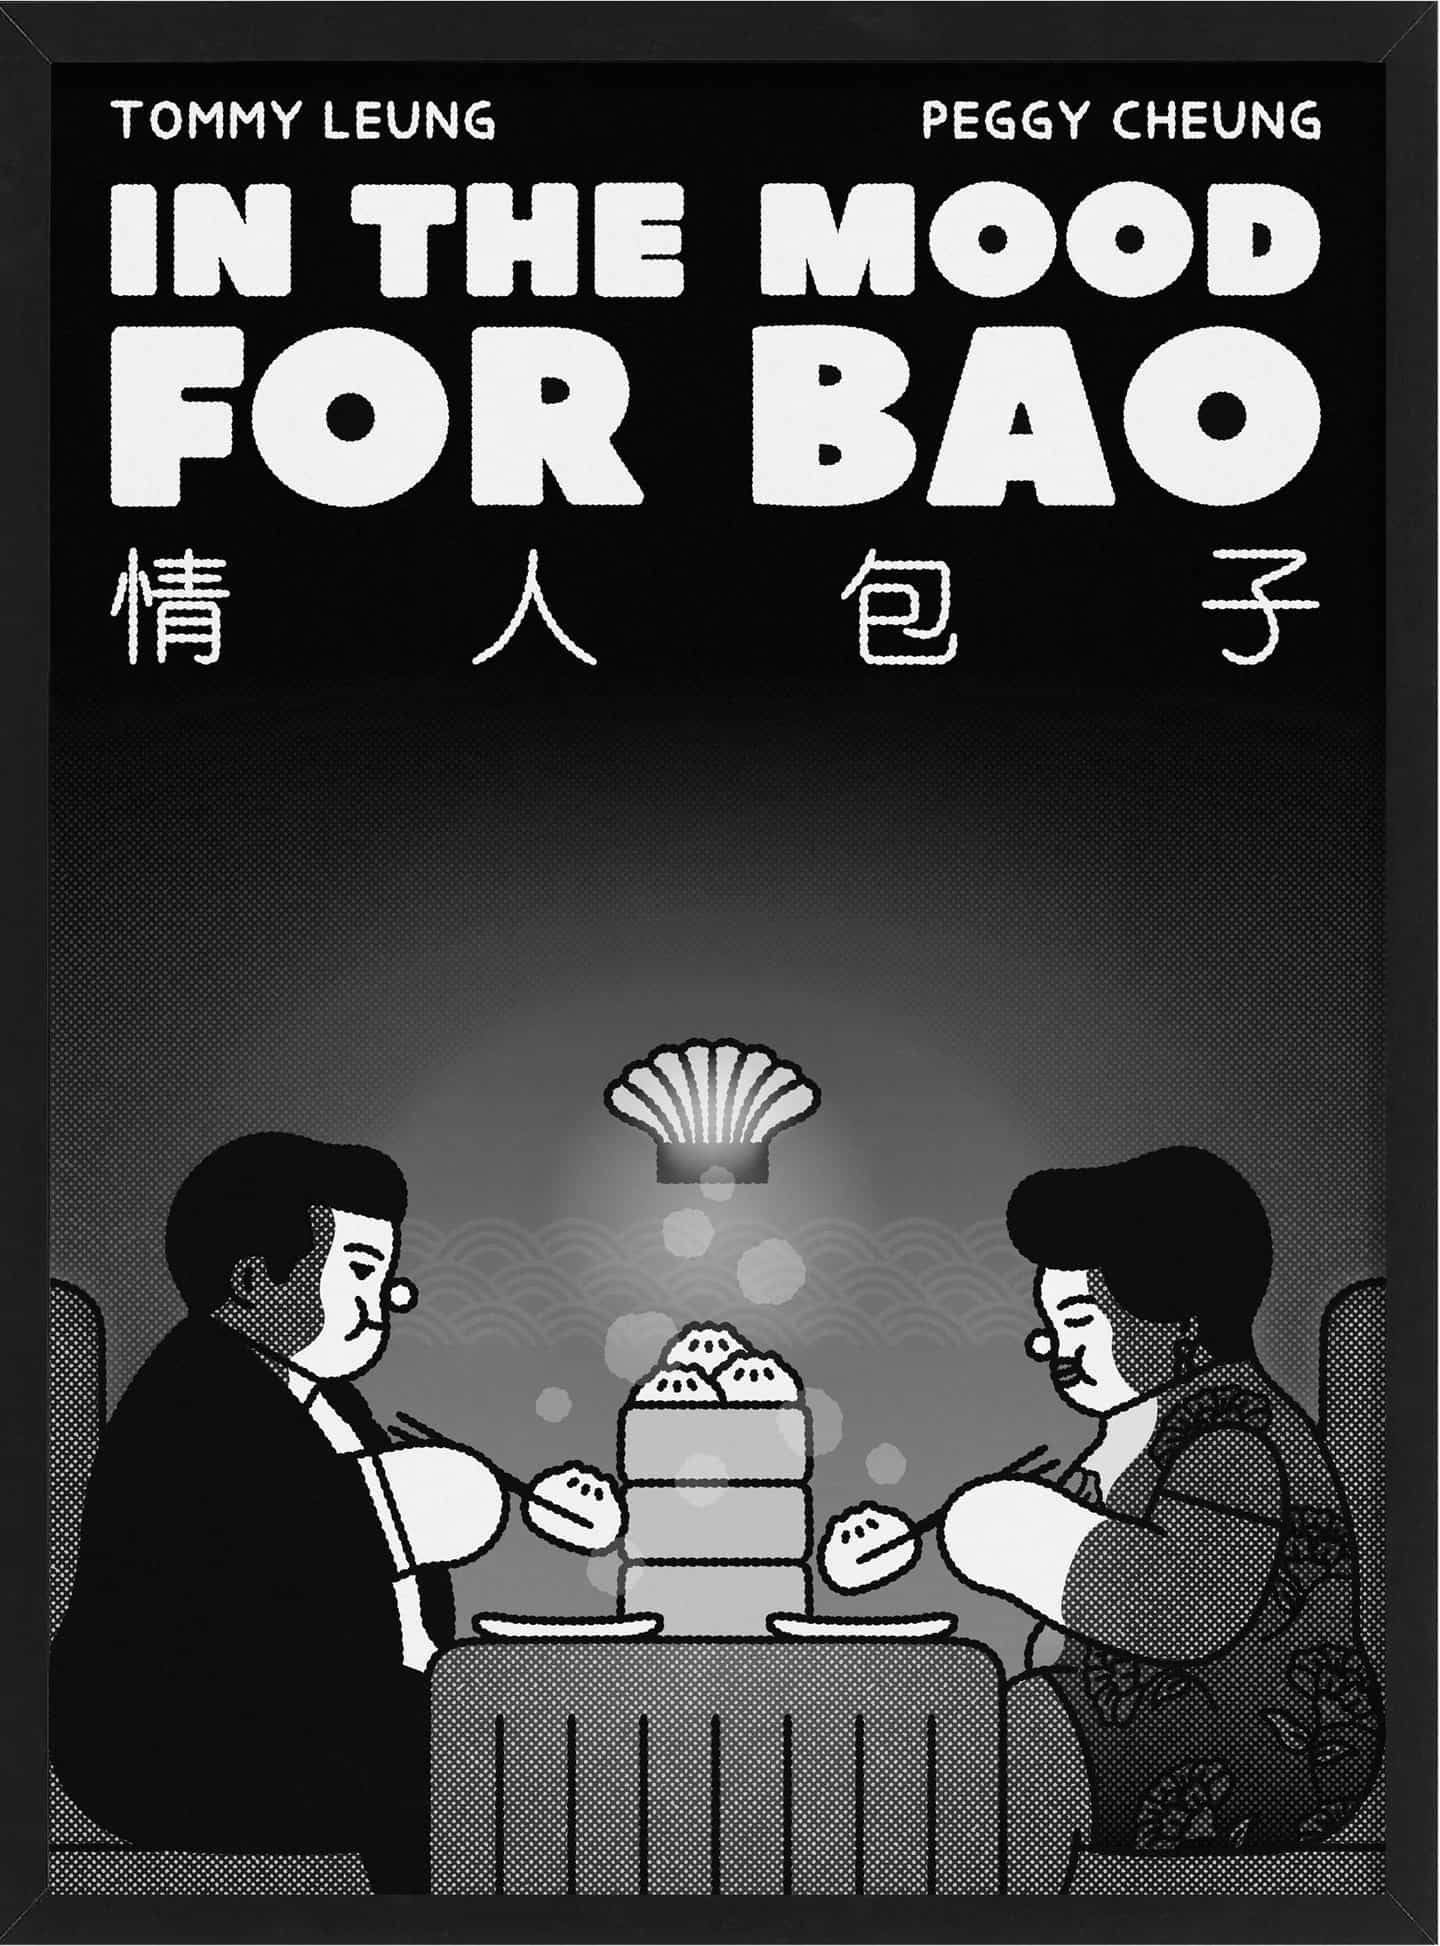 Paperboy: Debe ser agradable. Ilustración de Debbie Tea, Bao (Copyright © Debbie Tea, 2021)